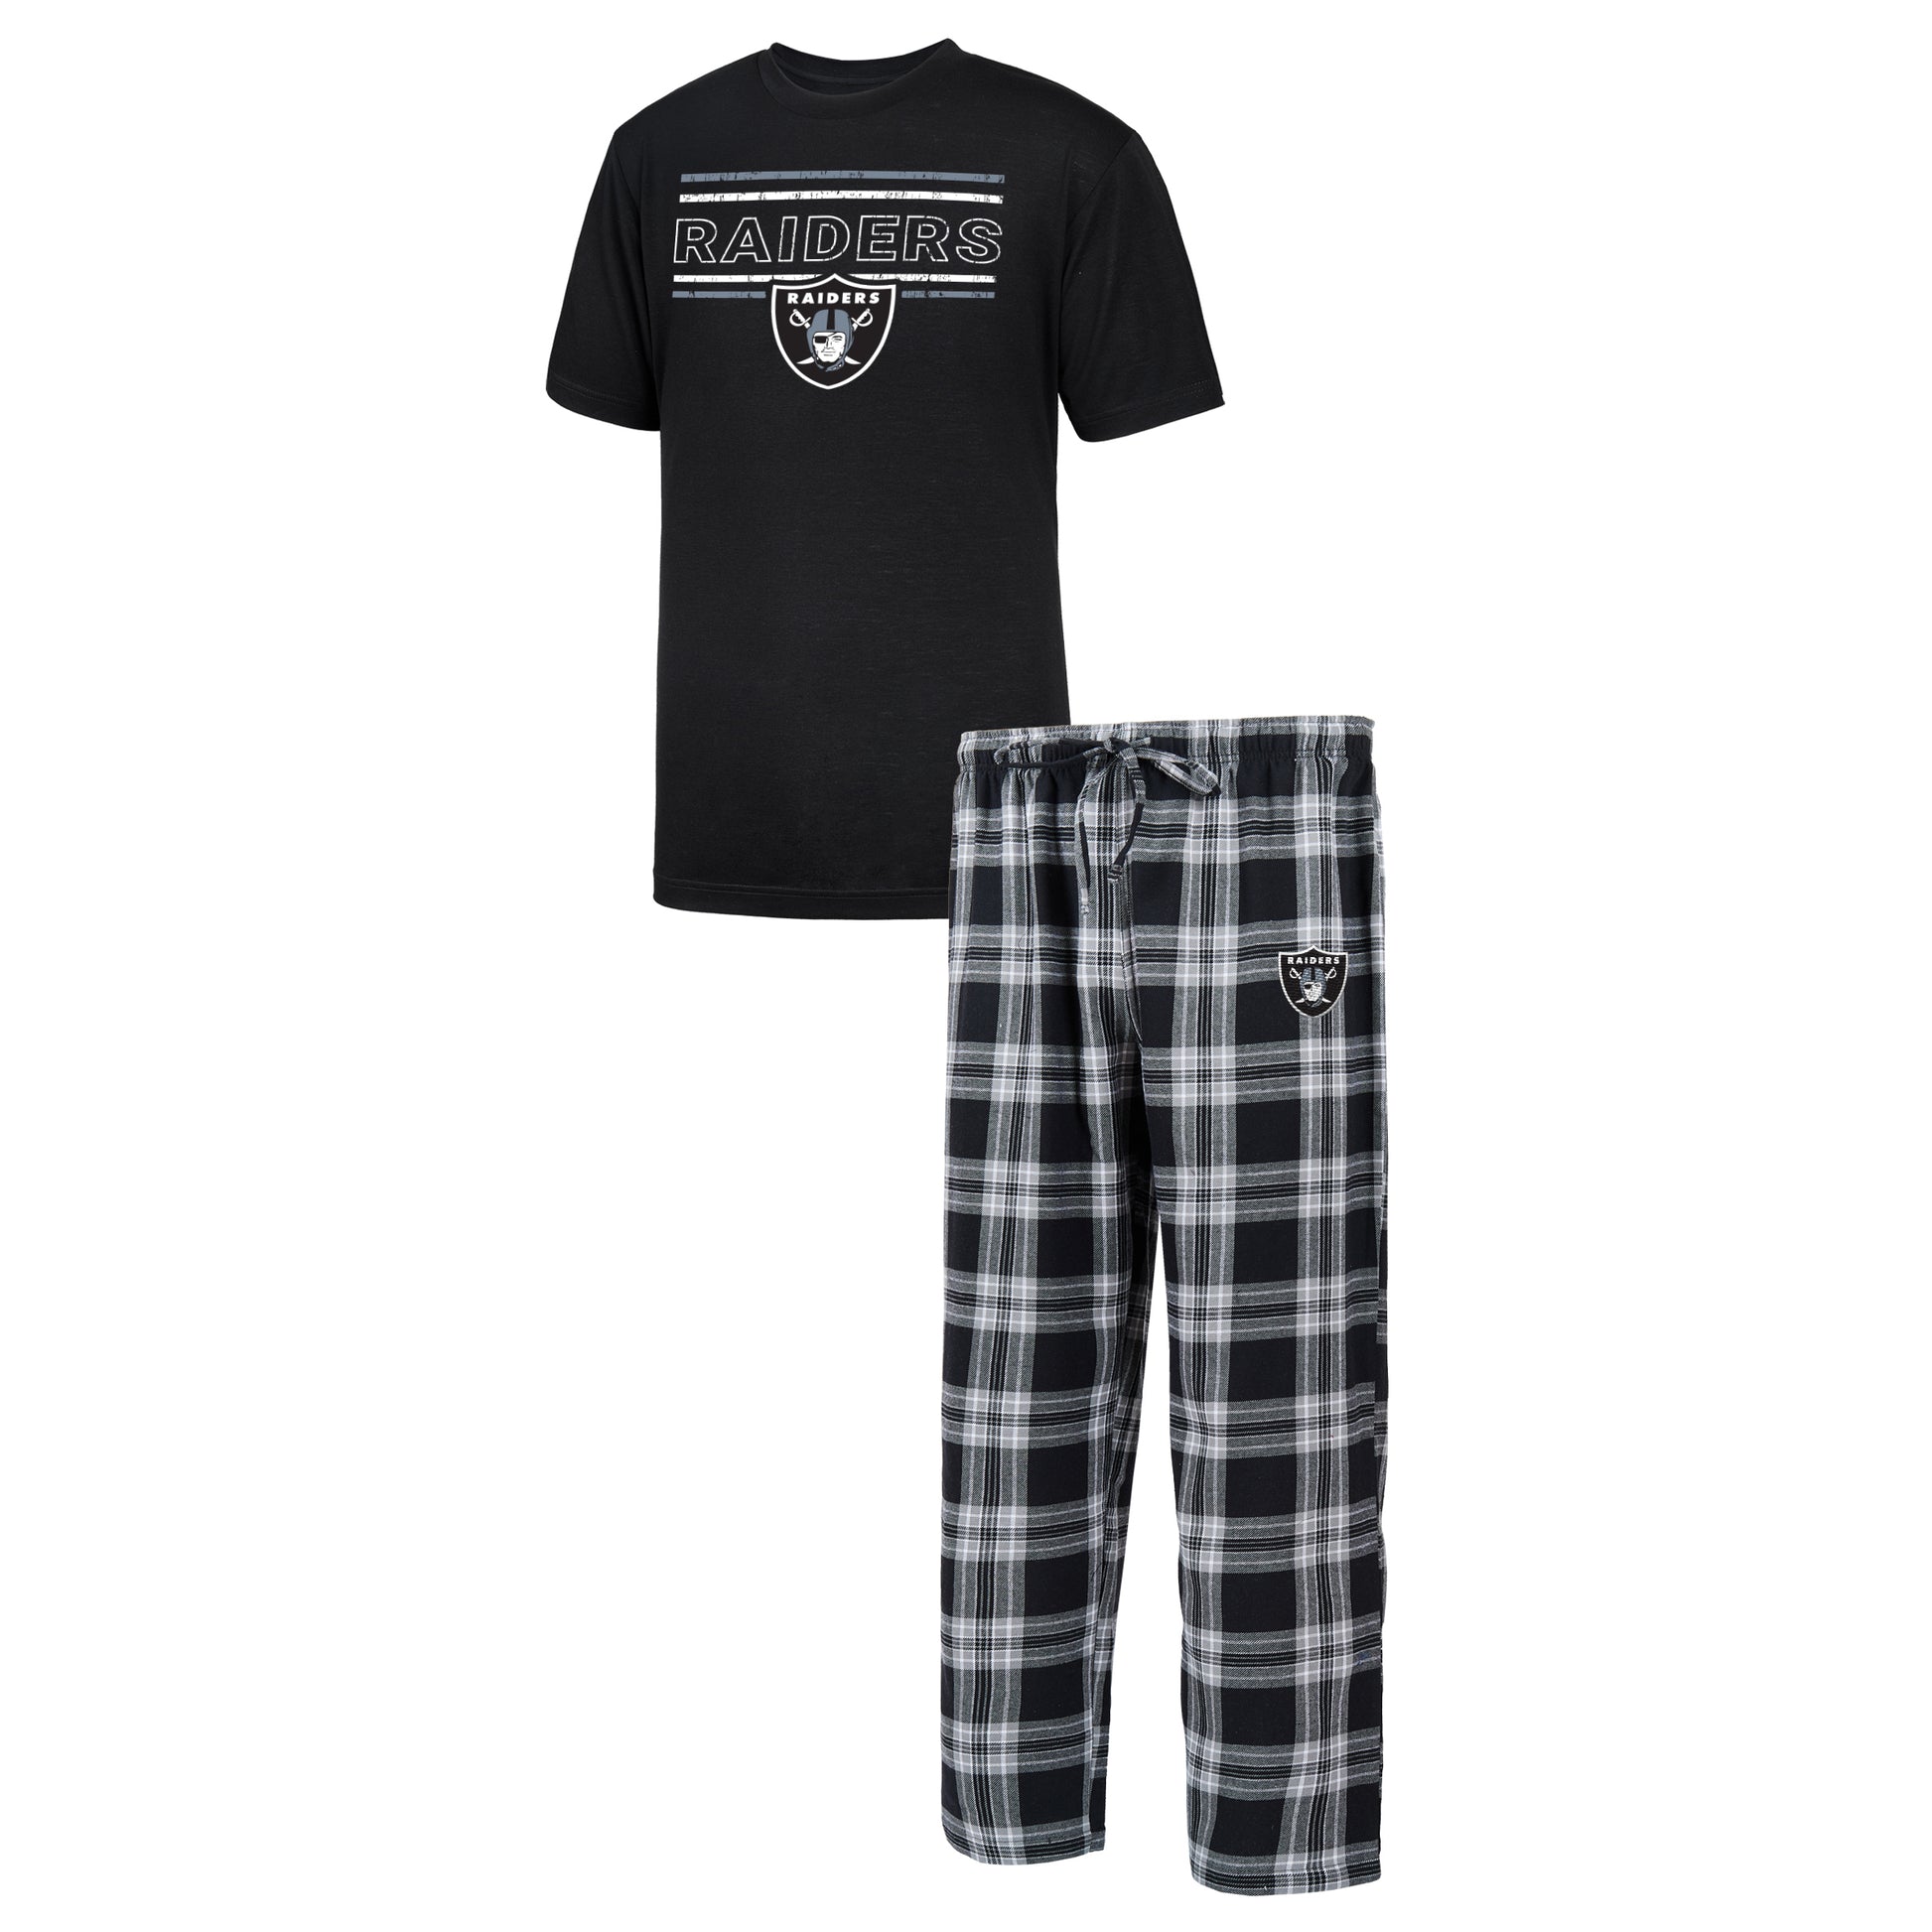 Las Vegas Raiders Men's Badge Pajama Pant Set 22 / M